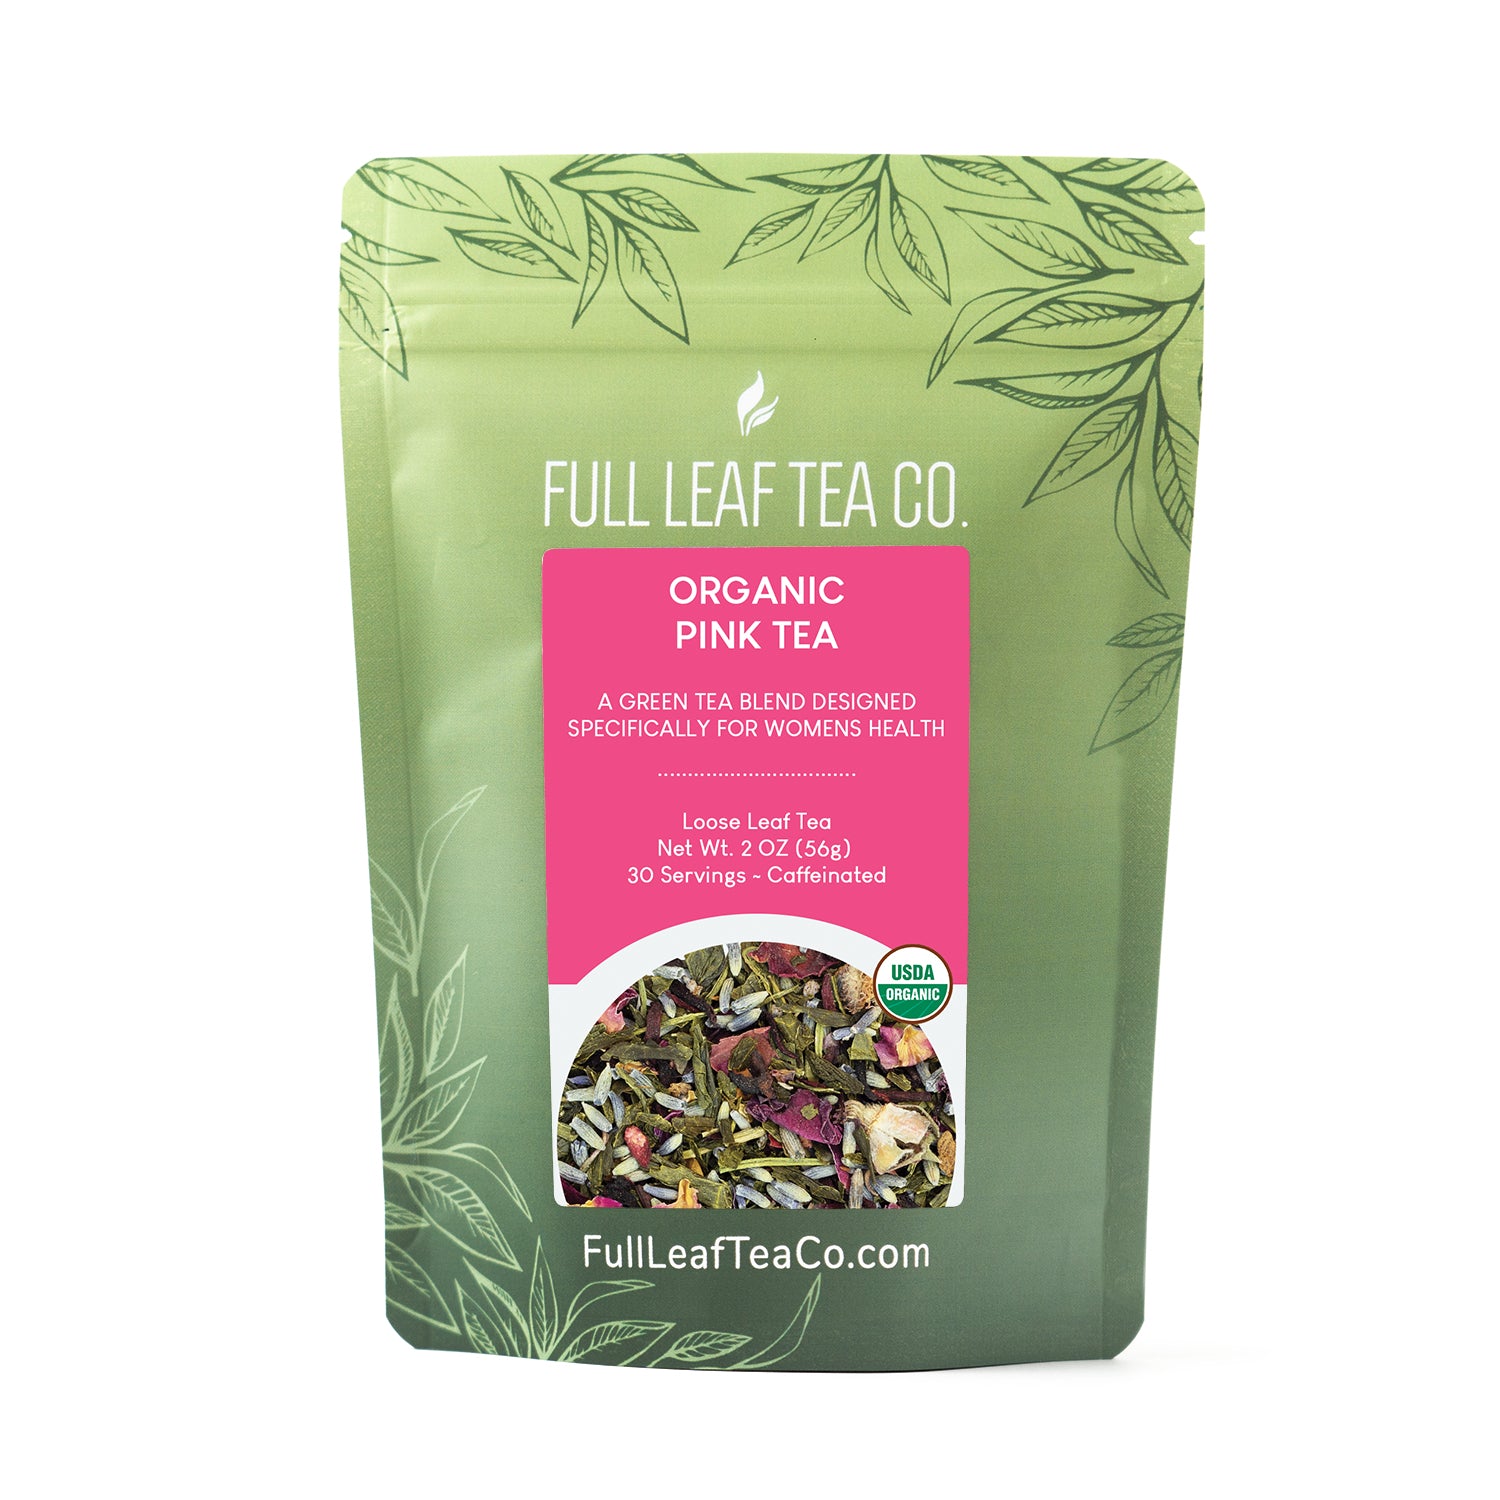 Beauty On-The-Go Kit - Loose Leaf Tea - Full Leaf Tea Company